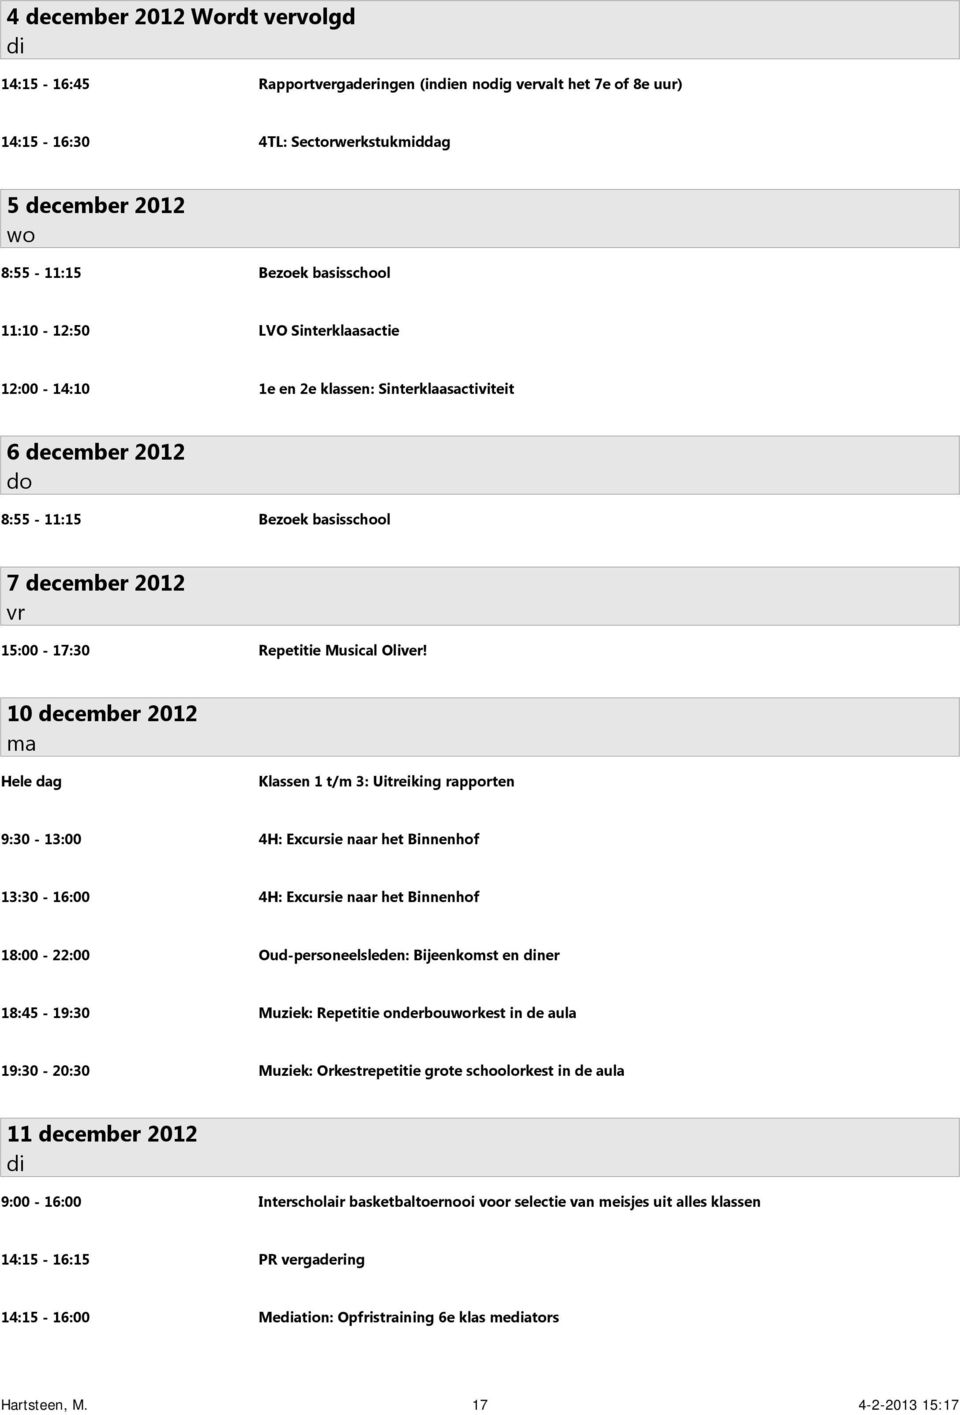 10 december 2012 Klassen 1 t/m 3: Uitreiking rapporten 9:30-13:00 4H: Excursie naar het Binnenhof 13:30-16:00 4H: Excursie naar het Binnenhof 18:00-22:00 Oud-personeelsleden: Bijeenkomst en ner